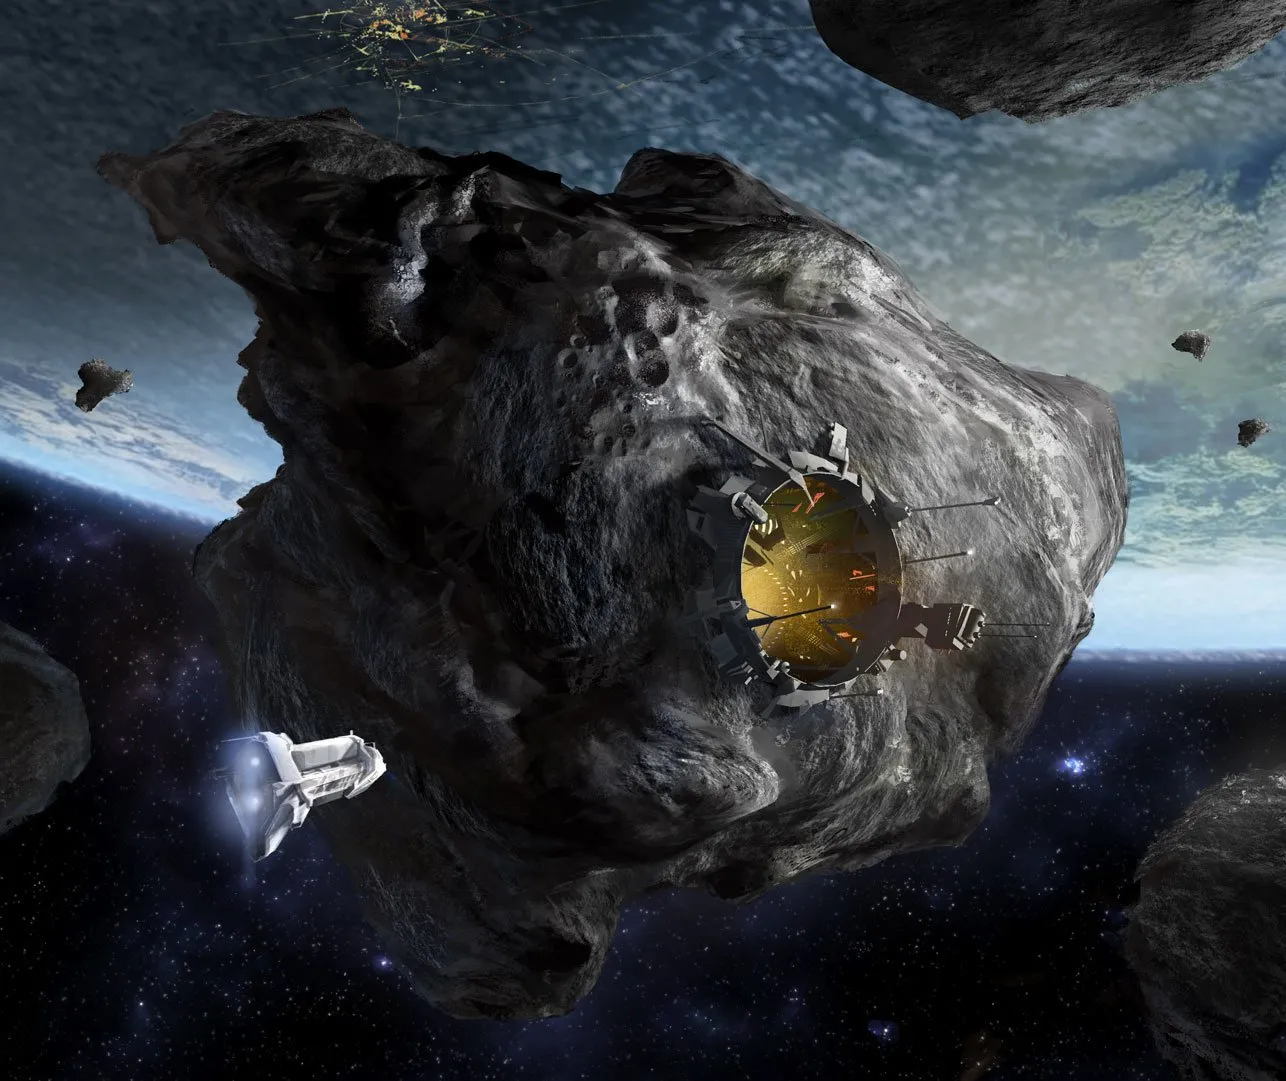 Некоторые астероиды, упавшие на Землю, могут быть «старыми космическими кораблями пришельцев».